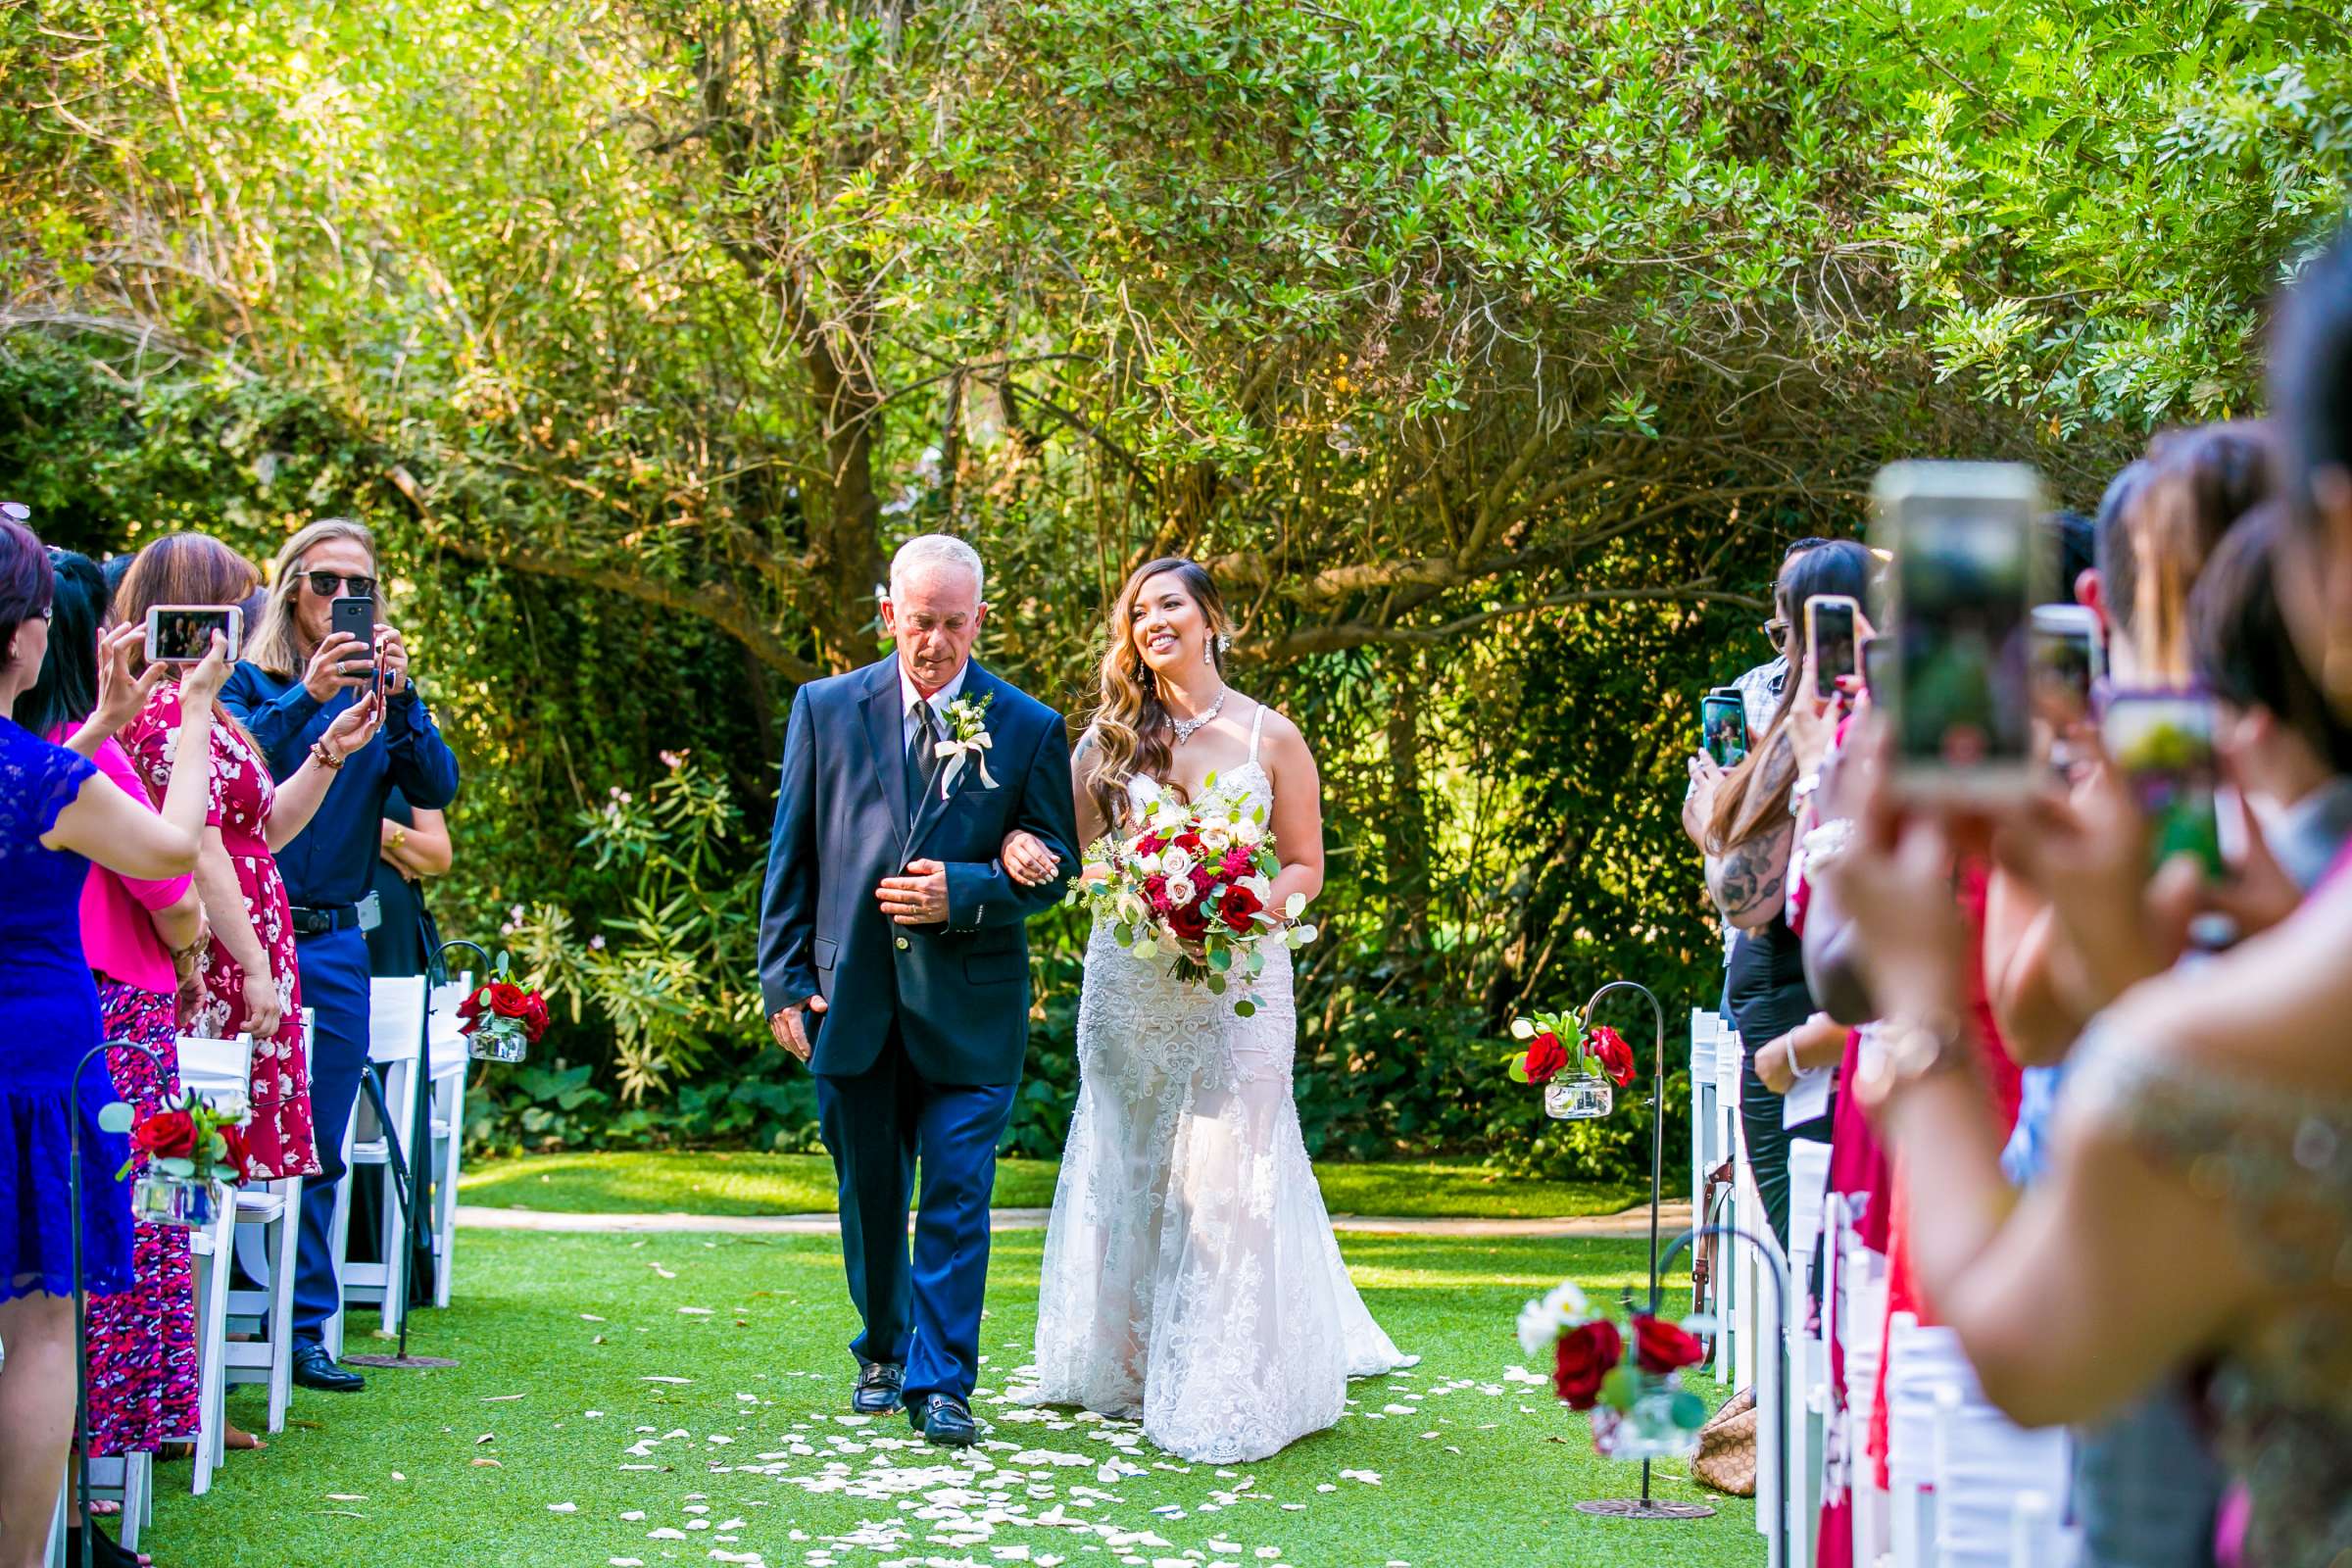 Twin Oaks House & Gardens Wedding Estate Wedding, Merrilynn and Trey Wedding Photo #76 by True Photography